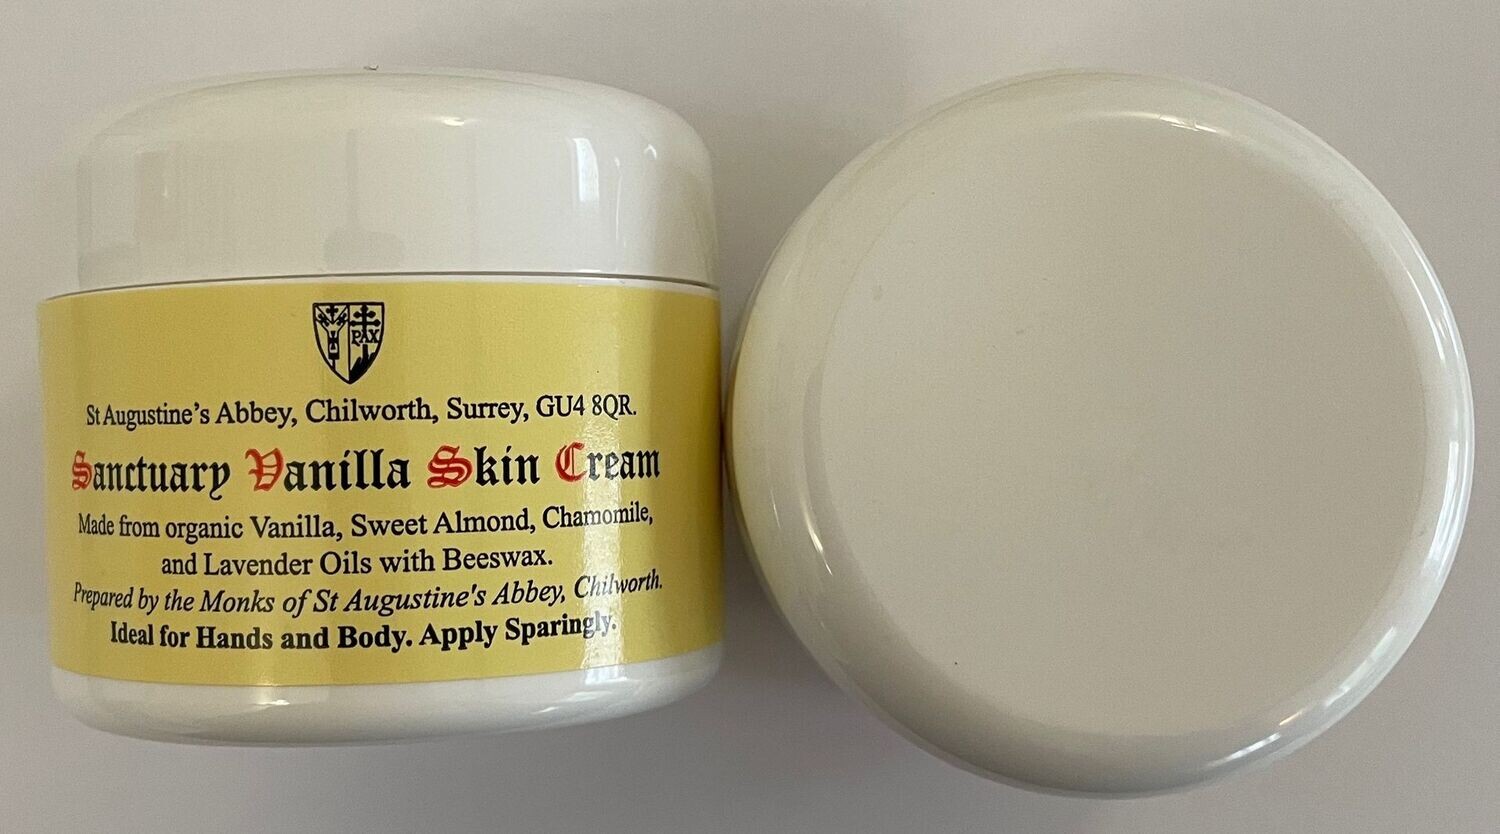 Sanctuary Vanilla Skin Cream